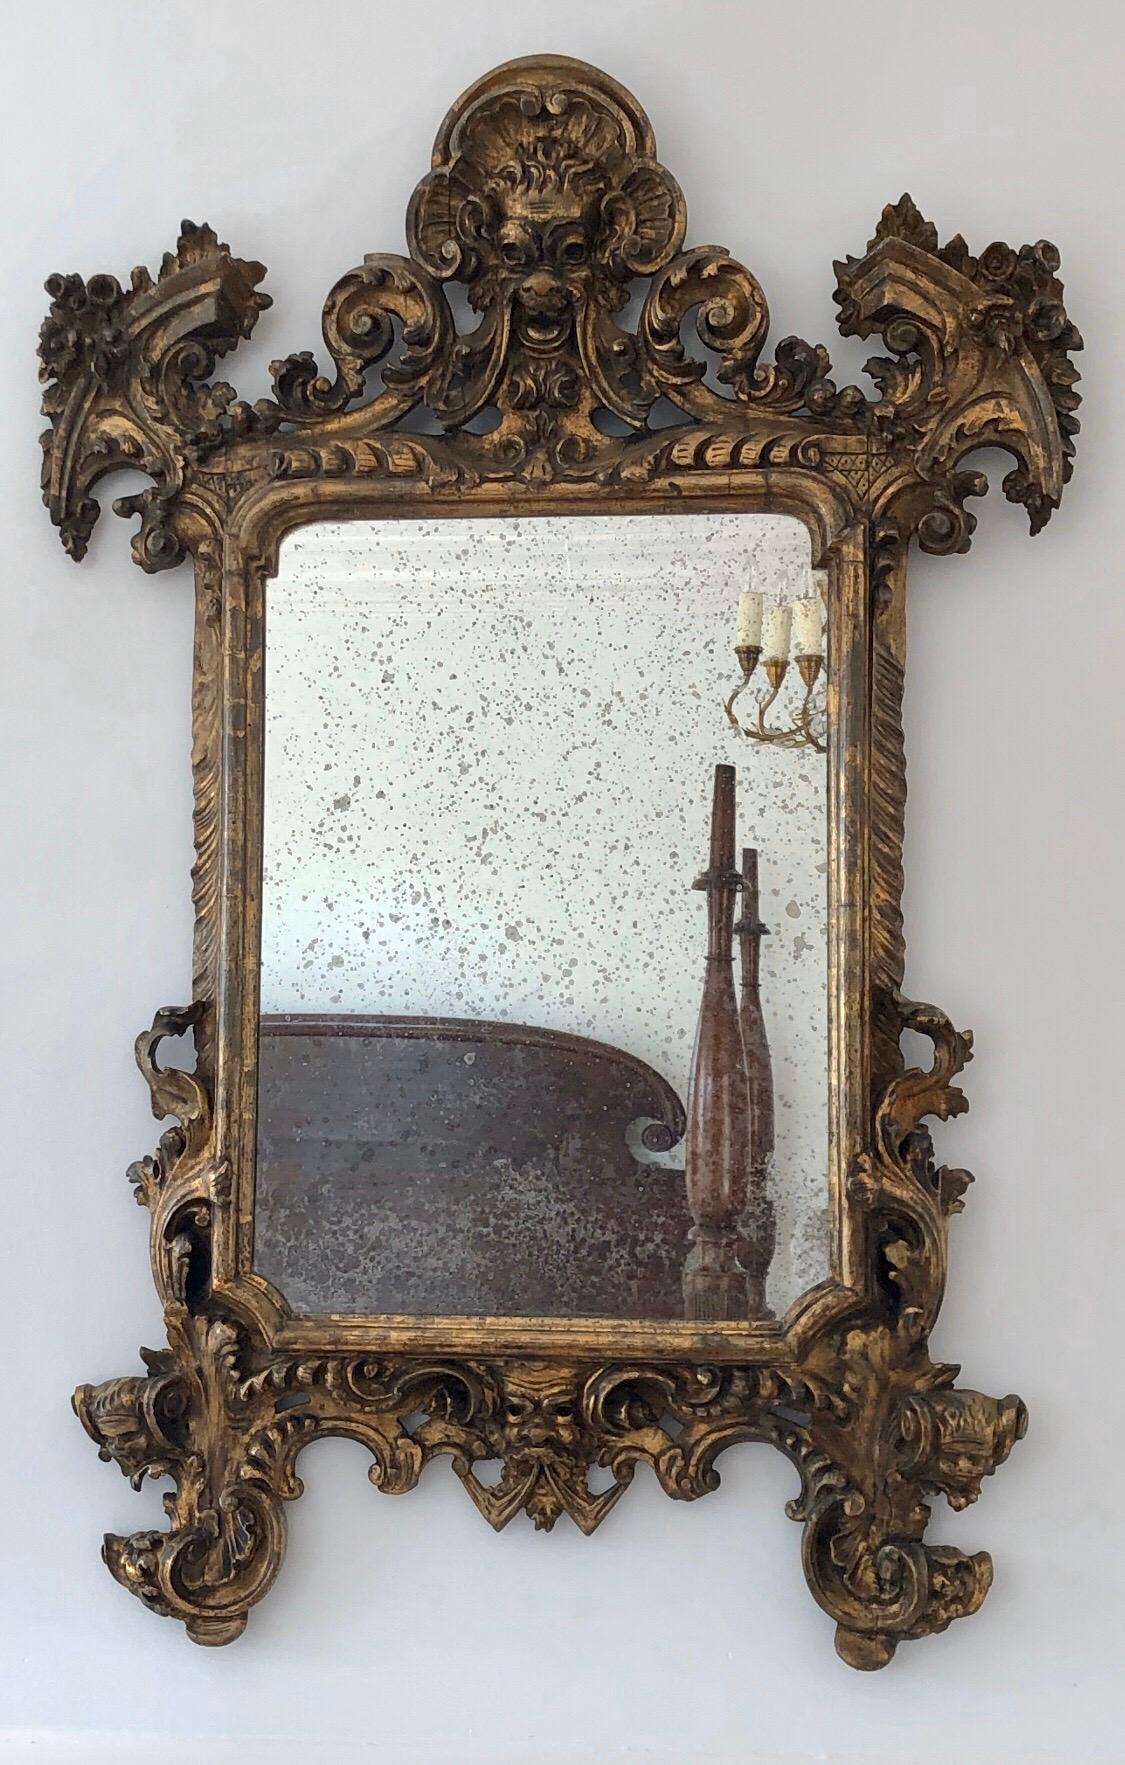 Ce miroir italien baroque du XVIIIe siècle en bois doré présente un visage théâtral sur la crête, avec des guirlandes s'écoulant vers les coins en corne d'abondance. Le cadre audacieux présente des volutes sculptées de manière classique. Le rail